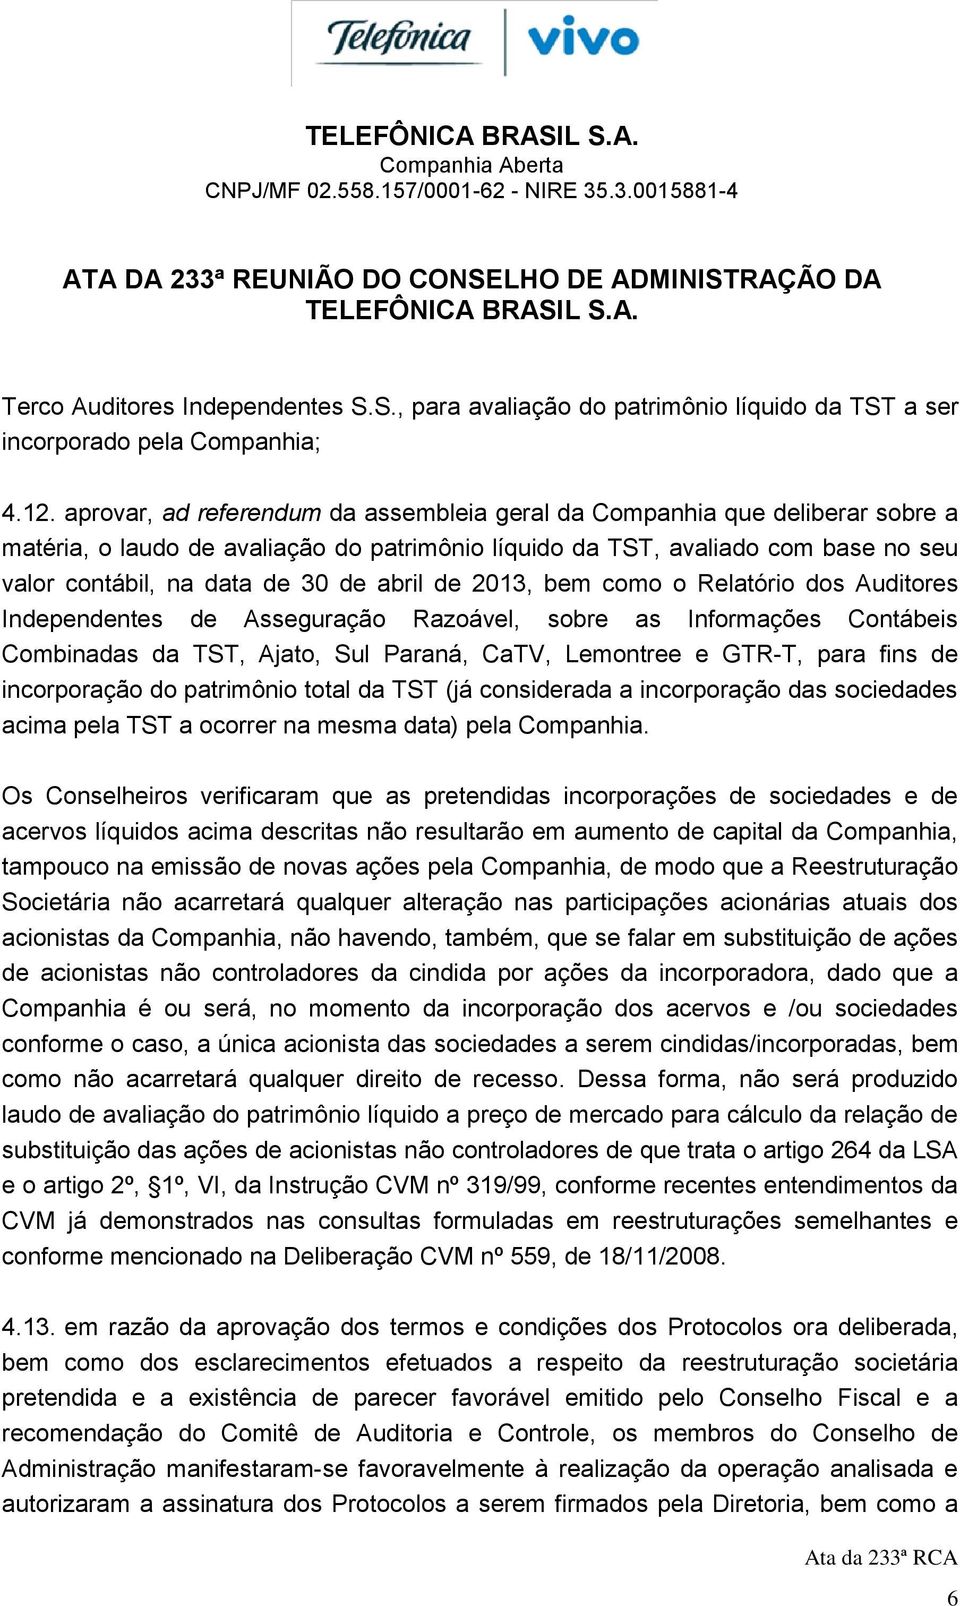 abril de 2013, bem como o Relatório dos Auditores Independentes de Asseguração Razoável, sobre as Informações Contábeis Combinadas da TST, Ajato, Sul Paraná, CaTV, Lemontree e GTR-T, para fins de